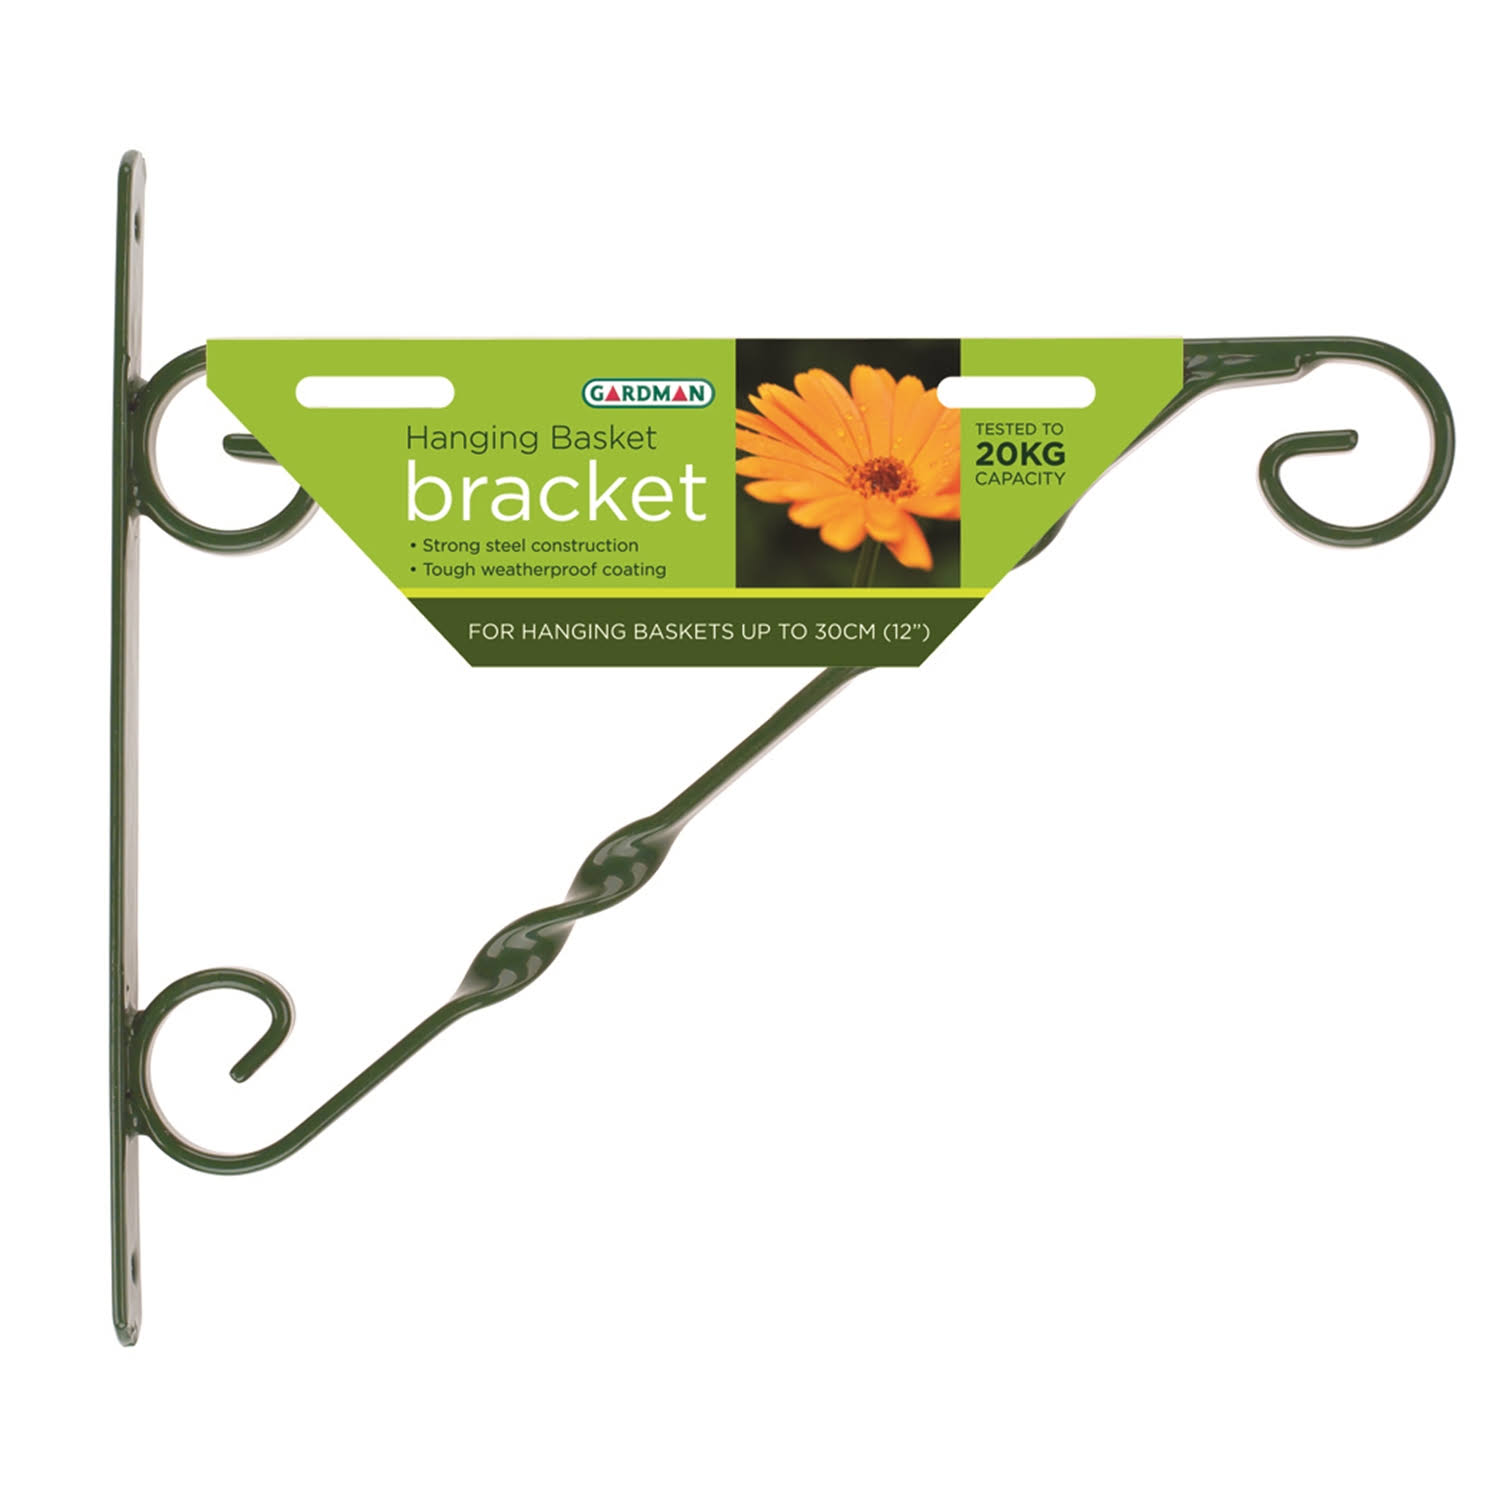 Gardman Standard Hanging Basket Bracket - 30cm, Black